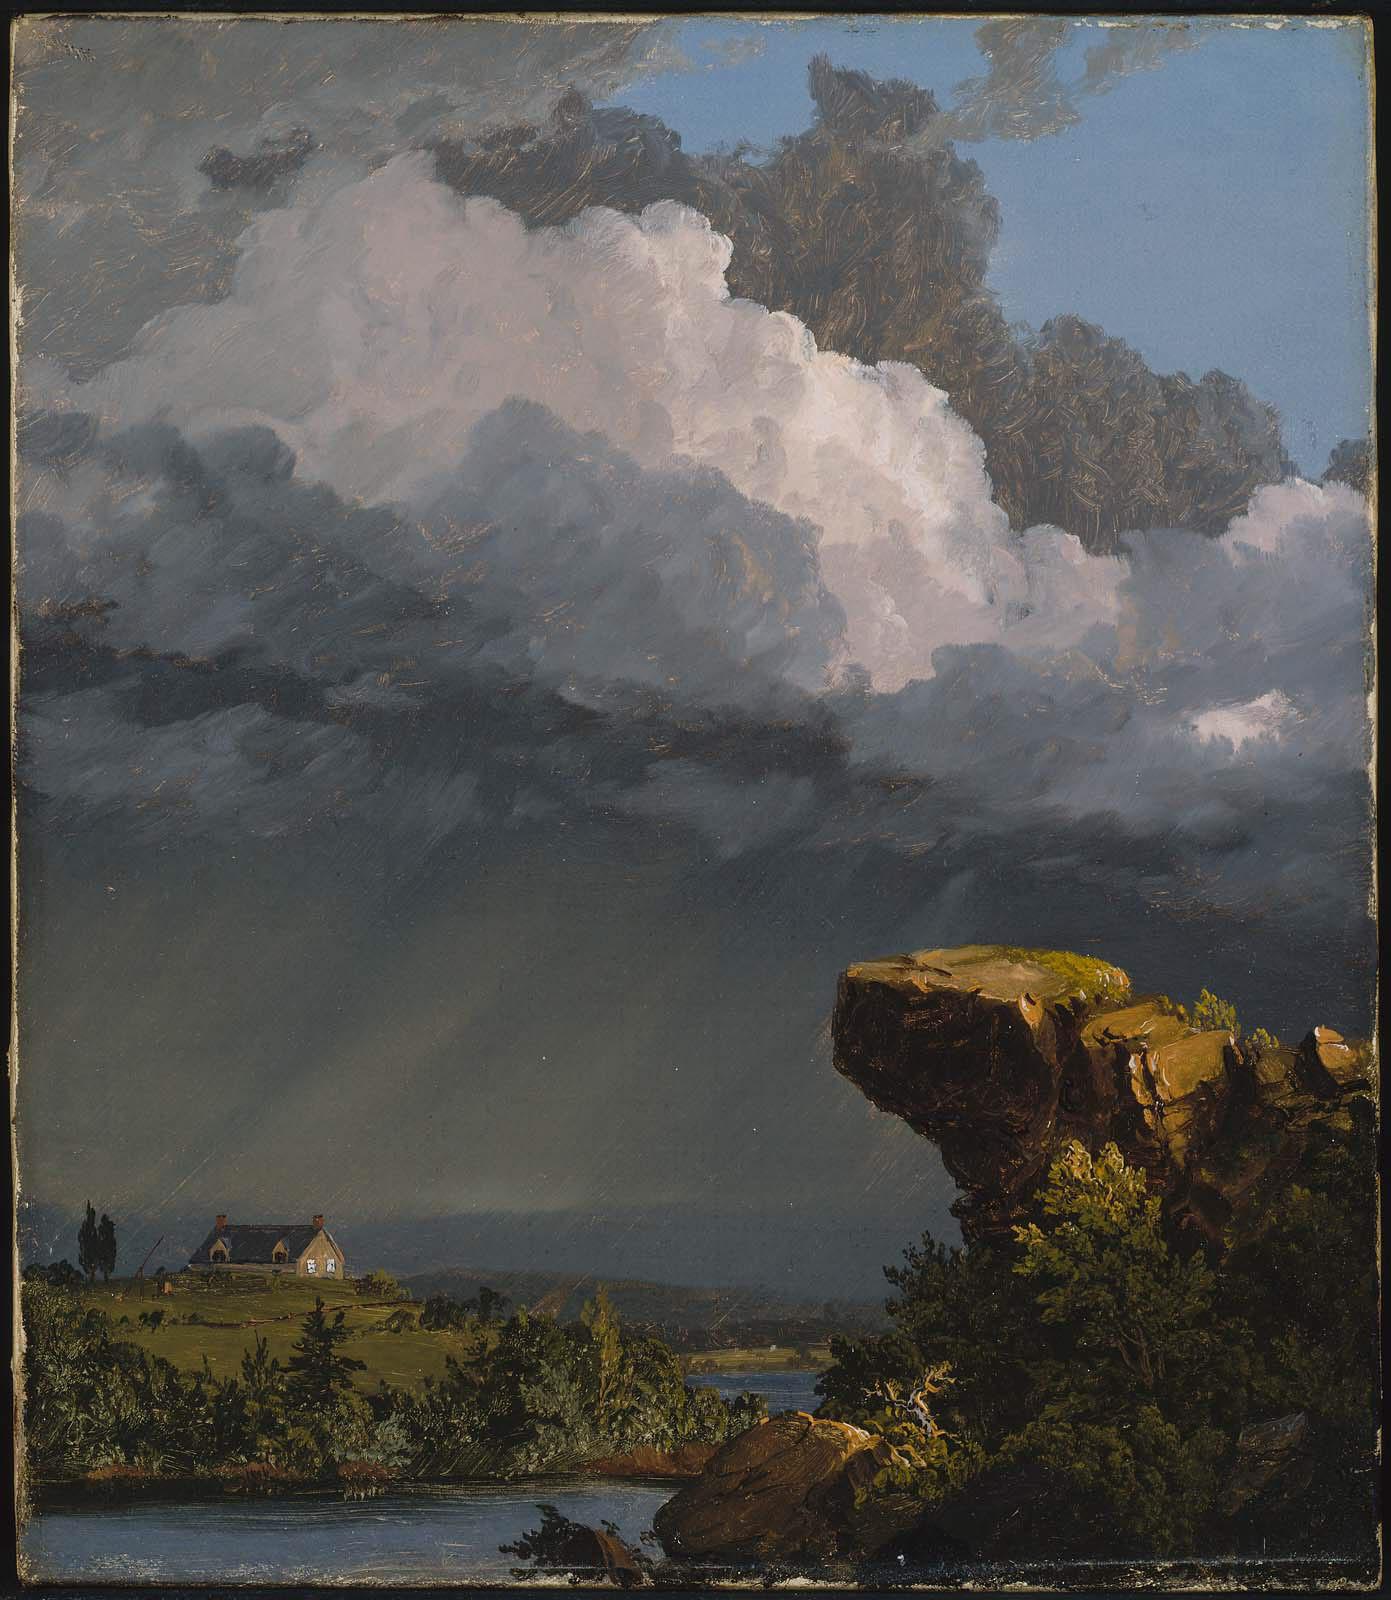 Een voorbijgaande VOORBIJ TREKKENDE storm by Frederic Edwin Church - 1849 - 35,88 x 30,48 cm 